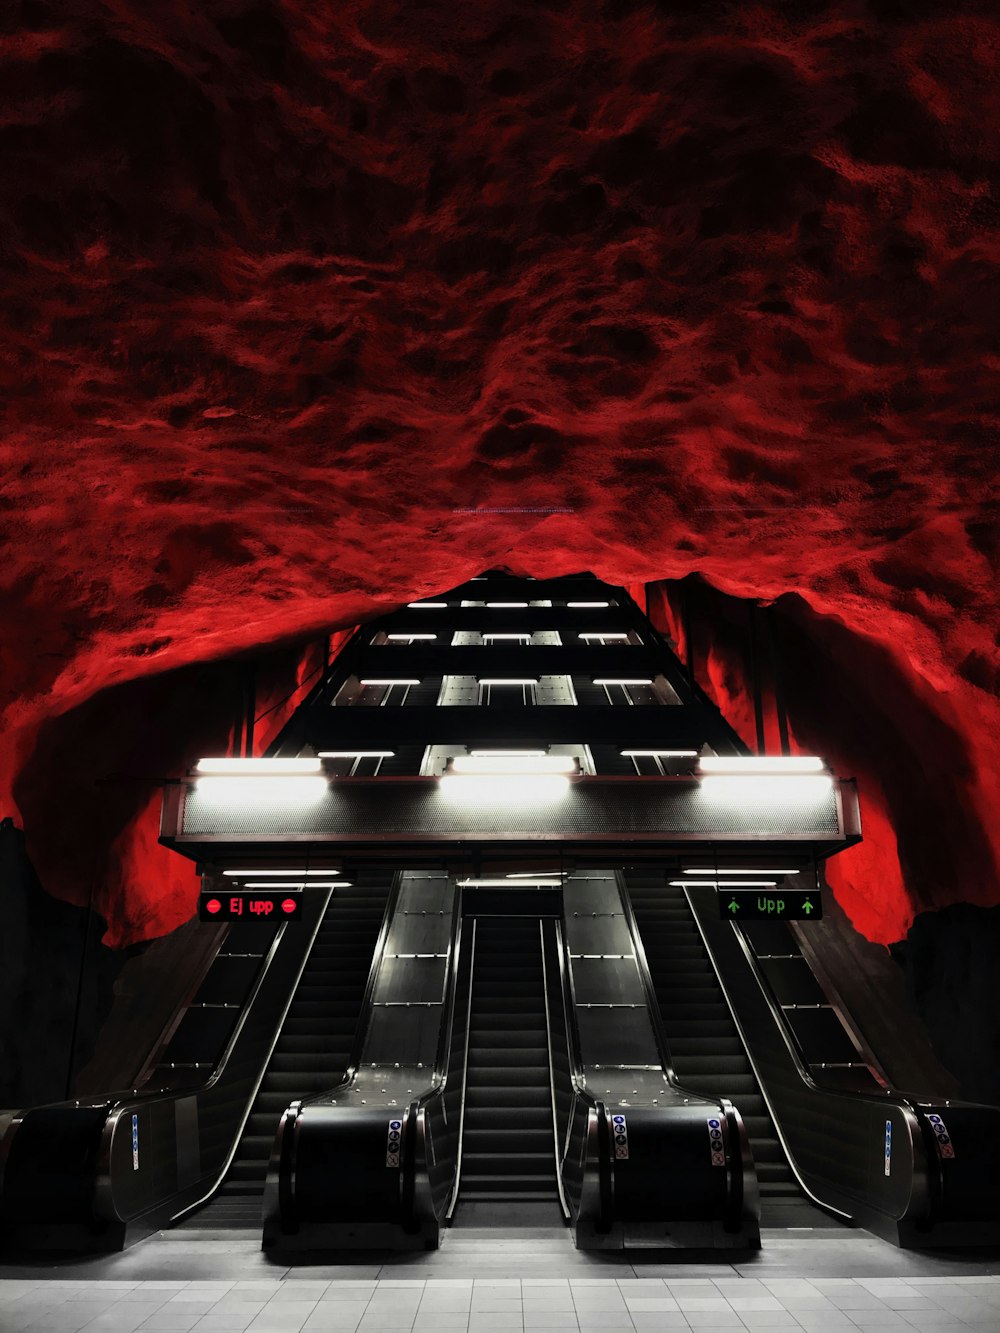 Una escalera mecánica en una estación de metro con paredes rojas